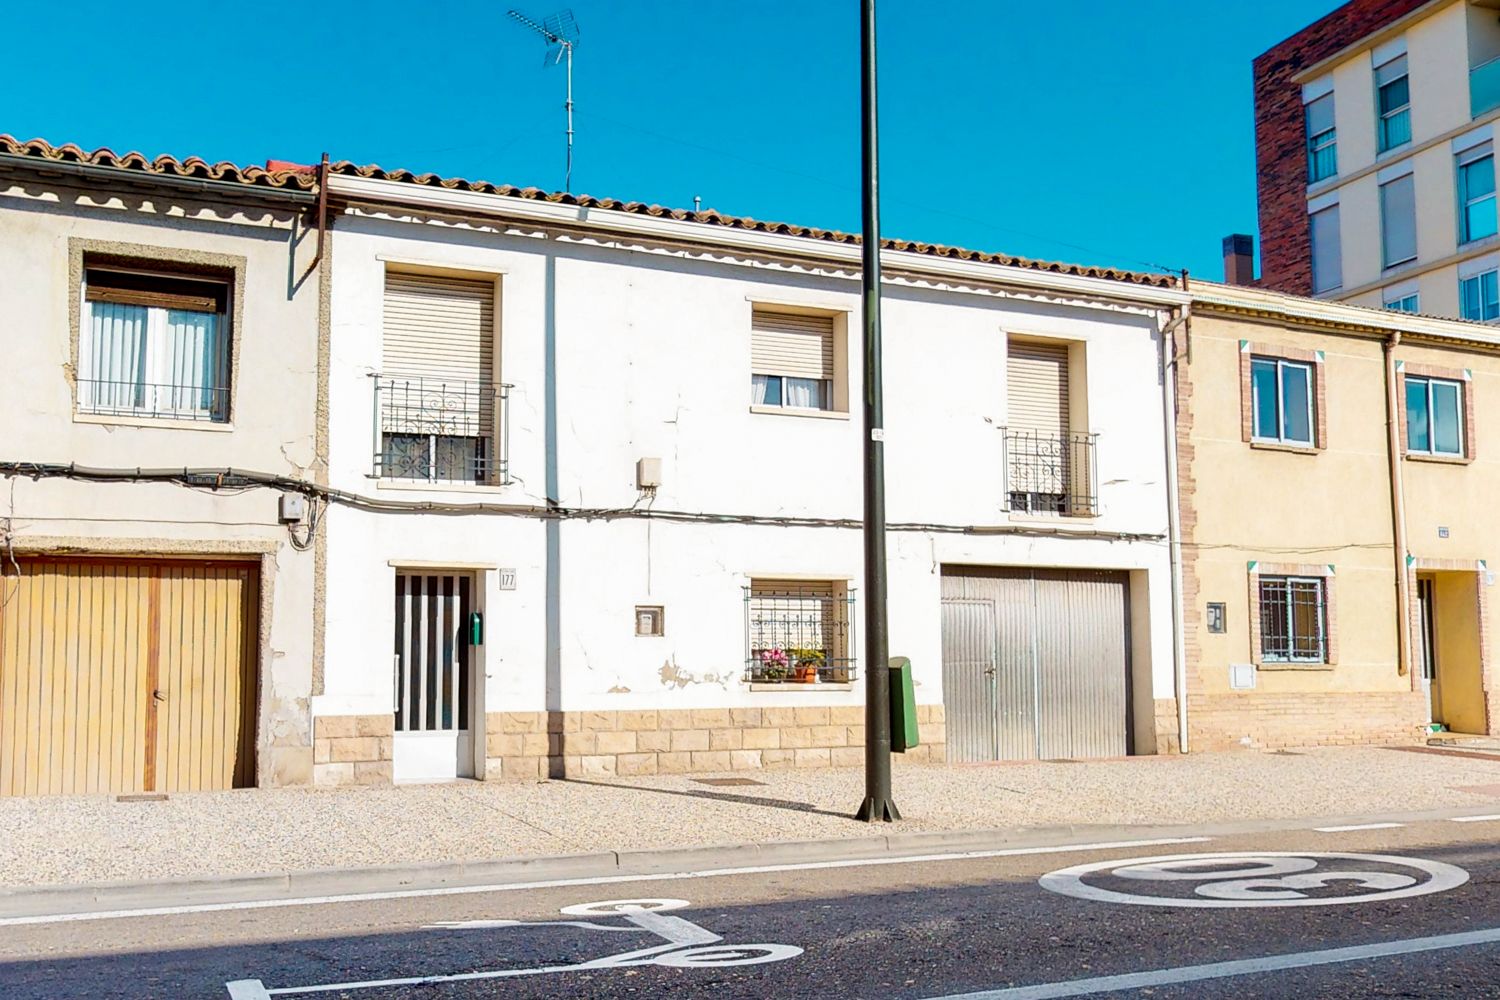 67 Viviendas y casas en venta en Santa Isabel - Movera, Zaragoza Capital |  fotocasa